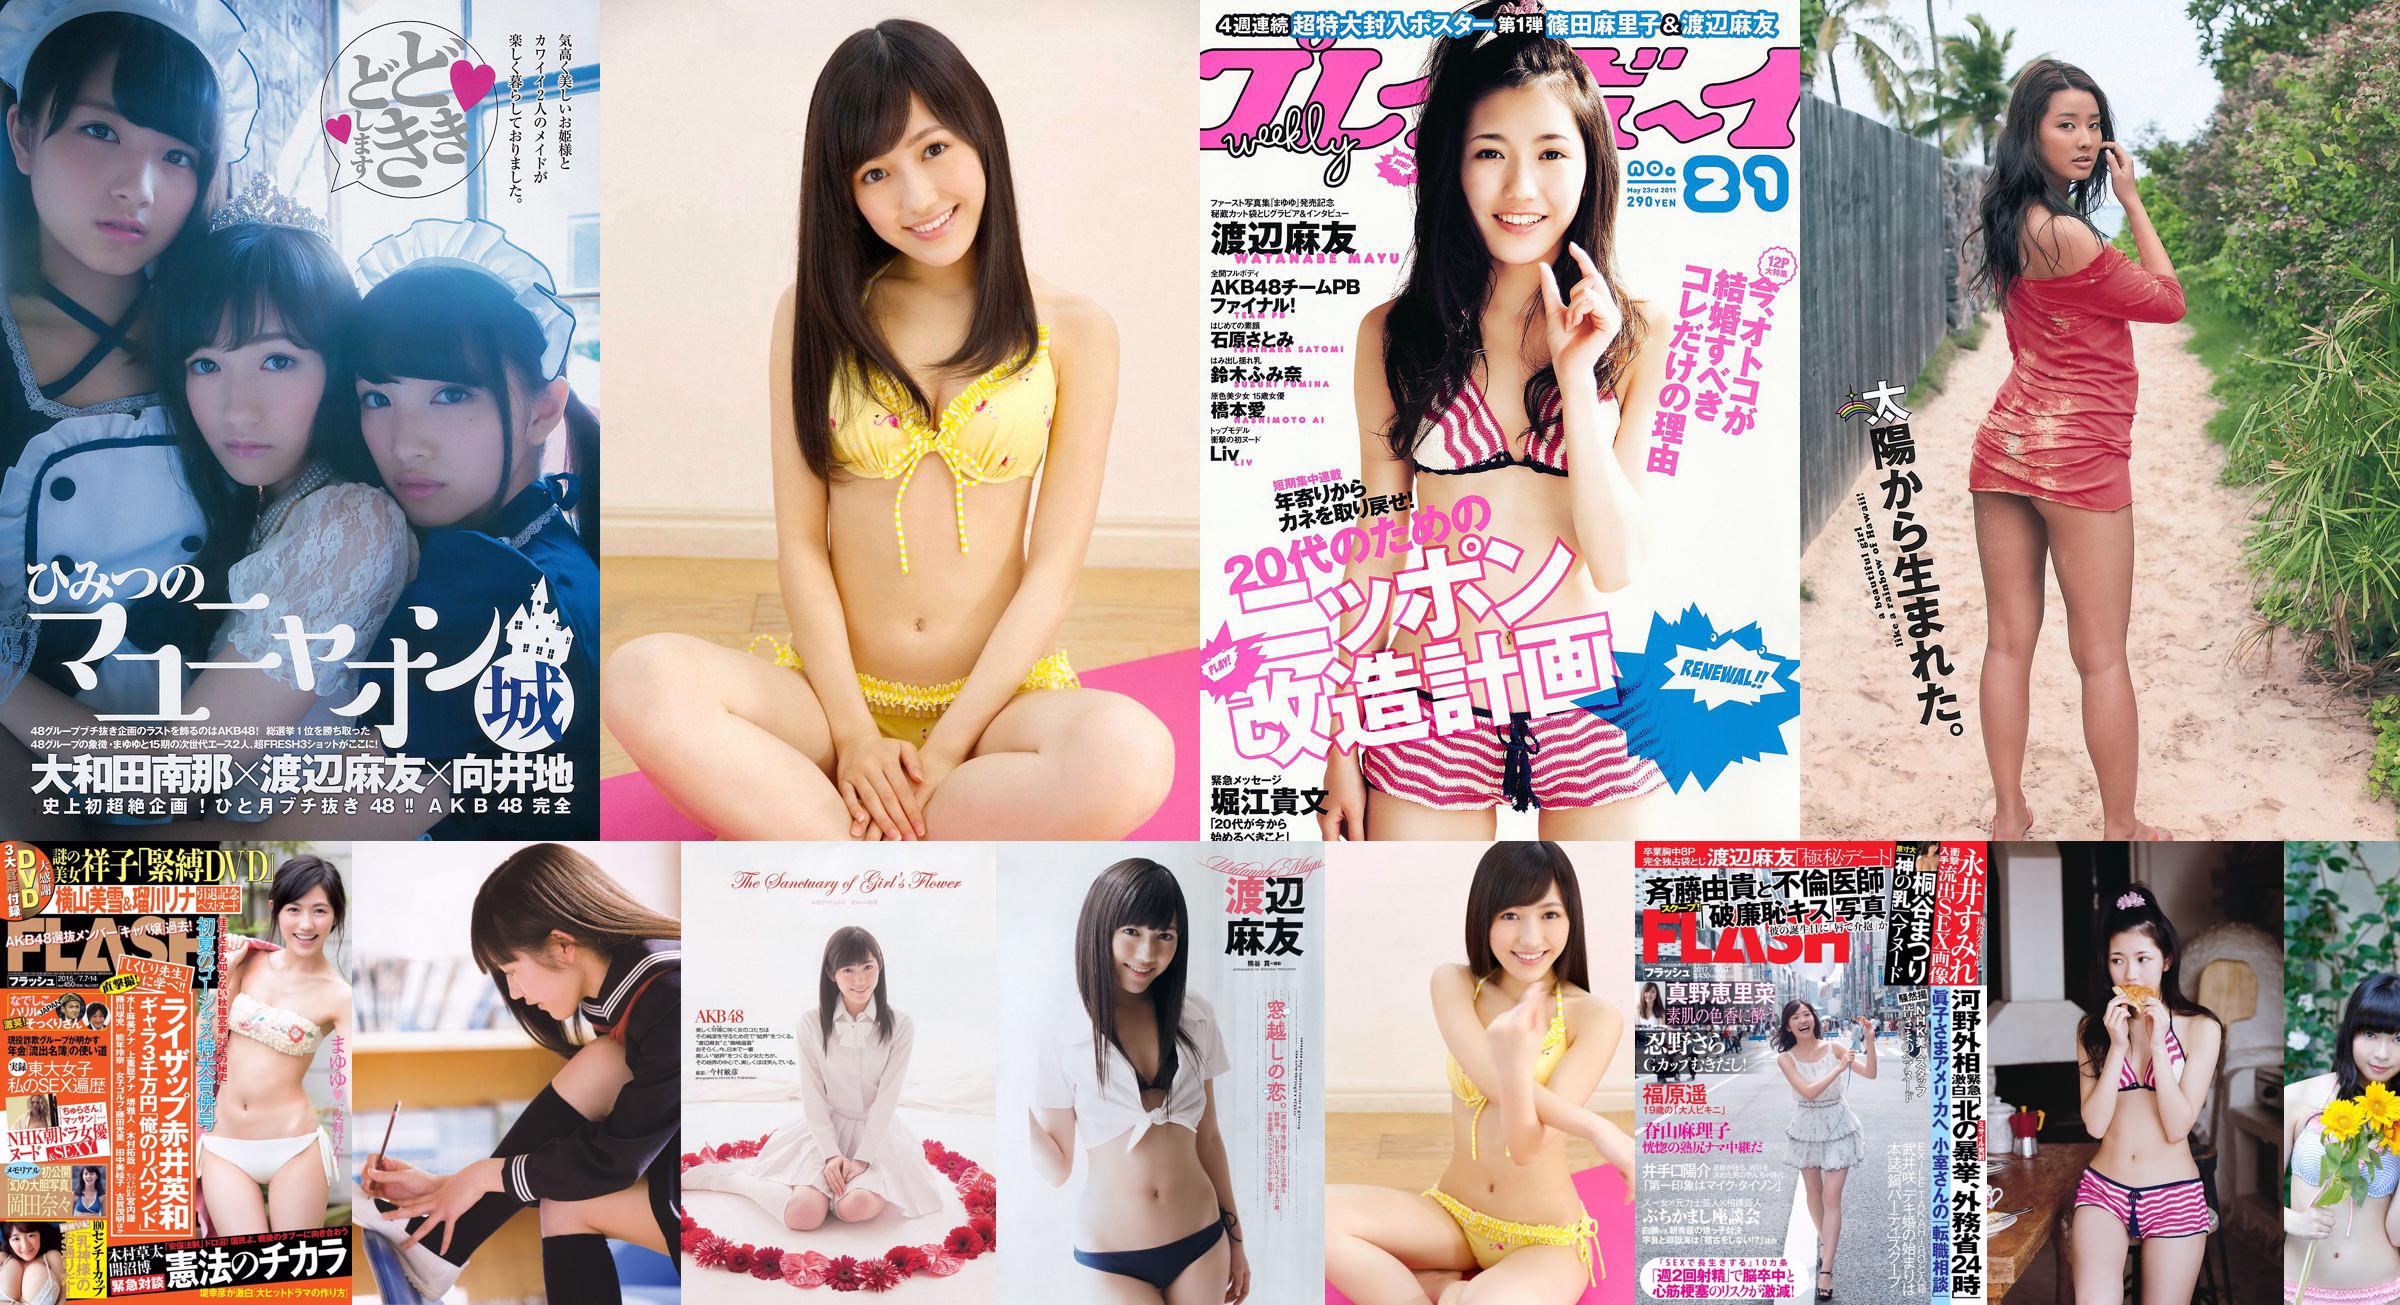 Mayu Watanabe Yumi Sugimoto Anna Ishibashi Miwako Kakei SKE48 Aya Nakata Yume Hazuki [Wöchentlicher Playboy] 2014 Nr. 36 Foto Miwako No.eb2f3d Seite 1